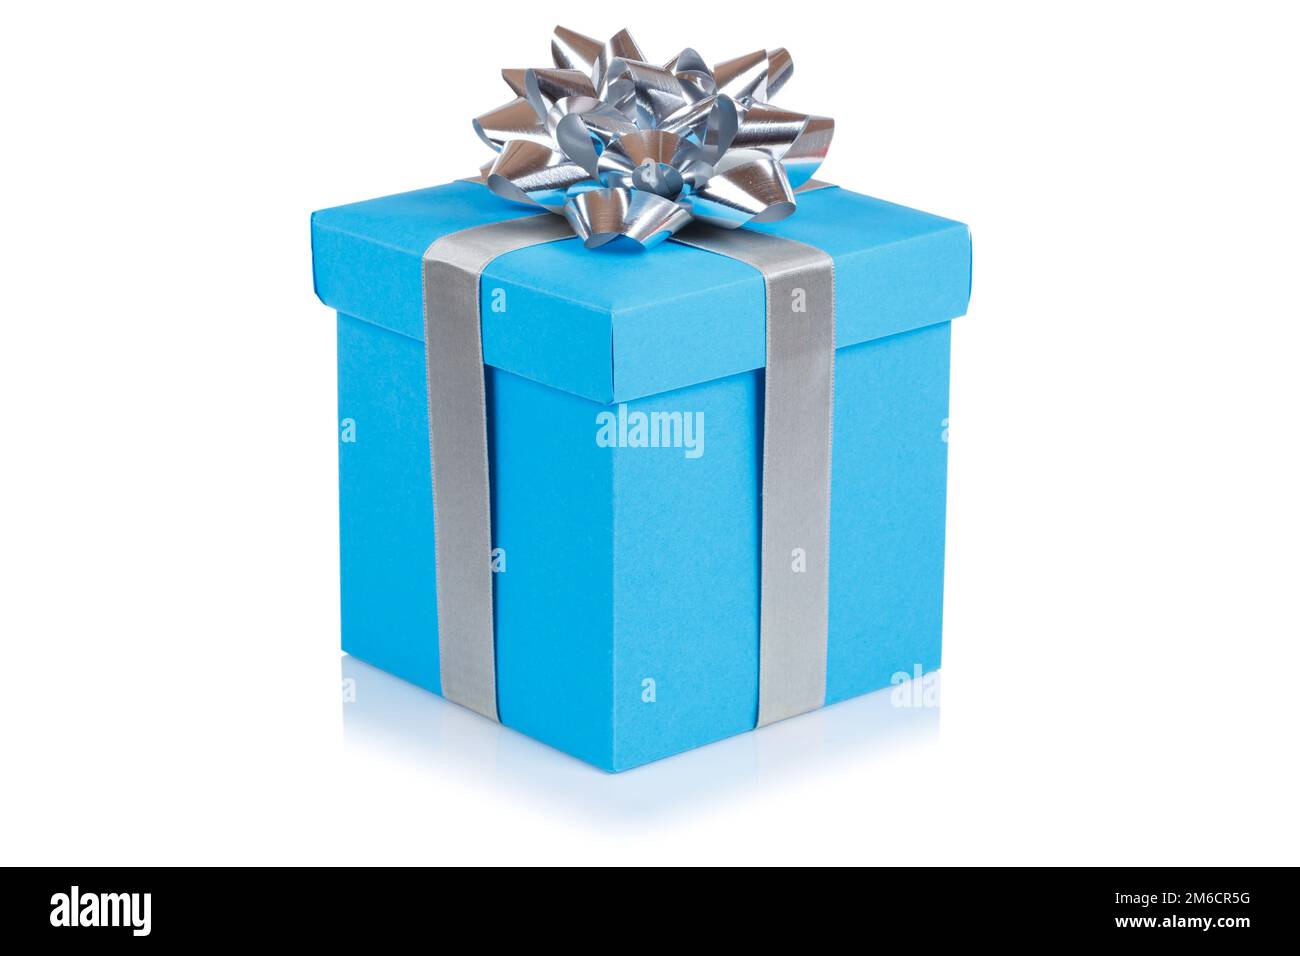 cajas de regalo para hombre de cumpleaños - Búsqueda de Google  Diy  birthday gifts, Diy gifts for him, Birthday gifts for boyfriend diy